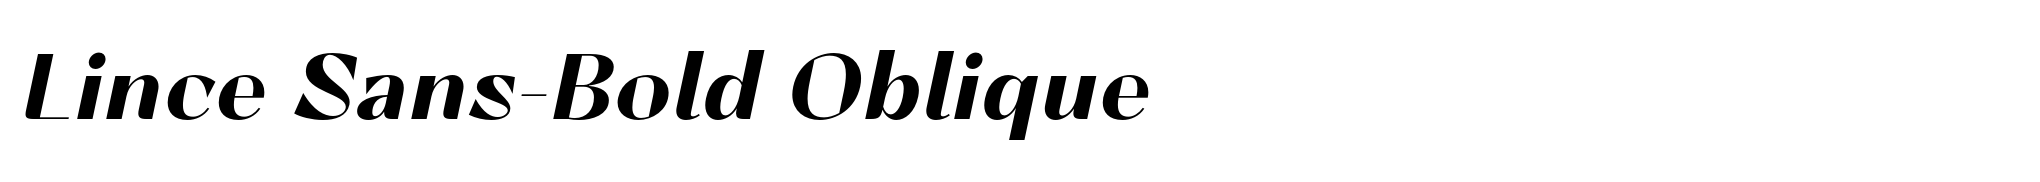 Lince Sans-Bold Oblique image